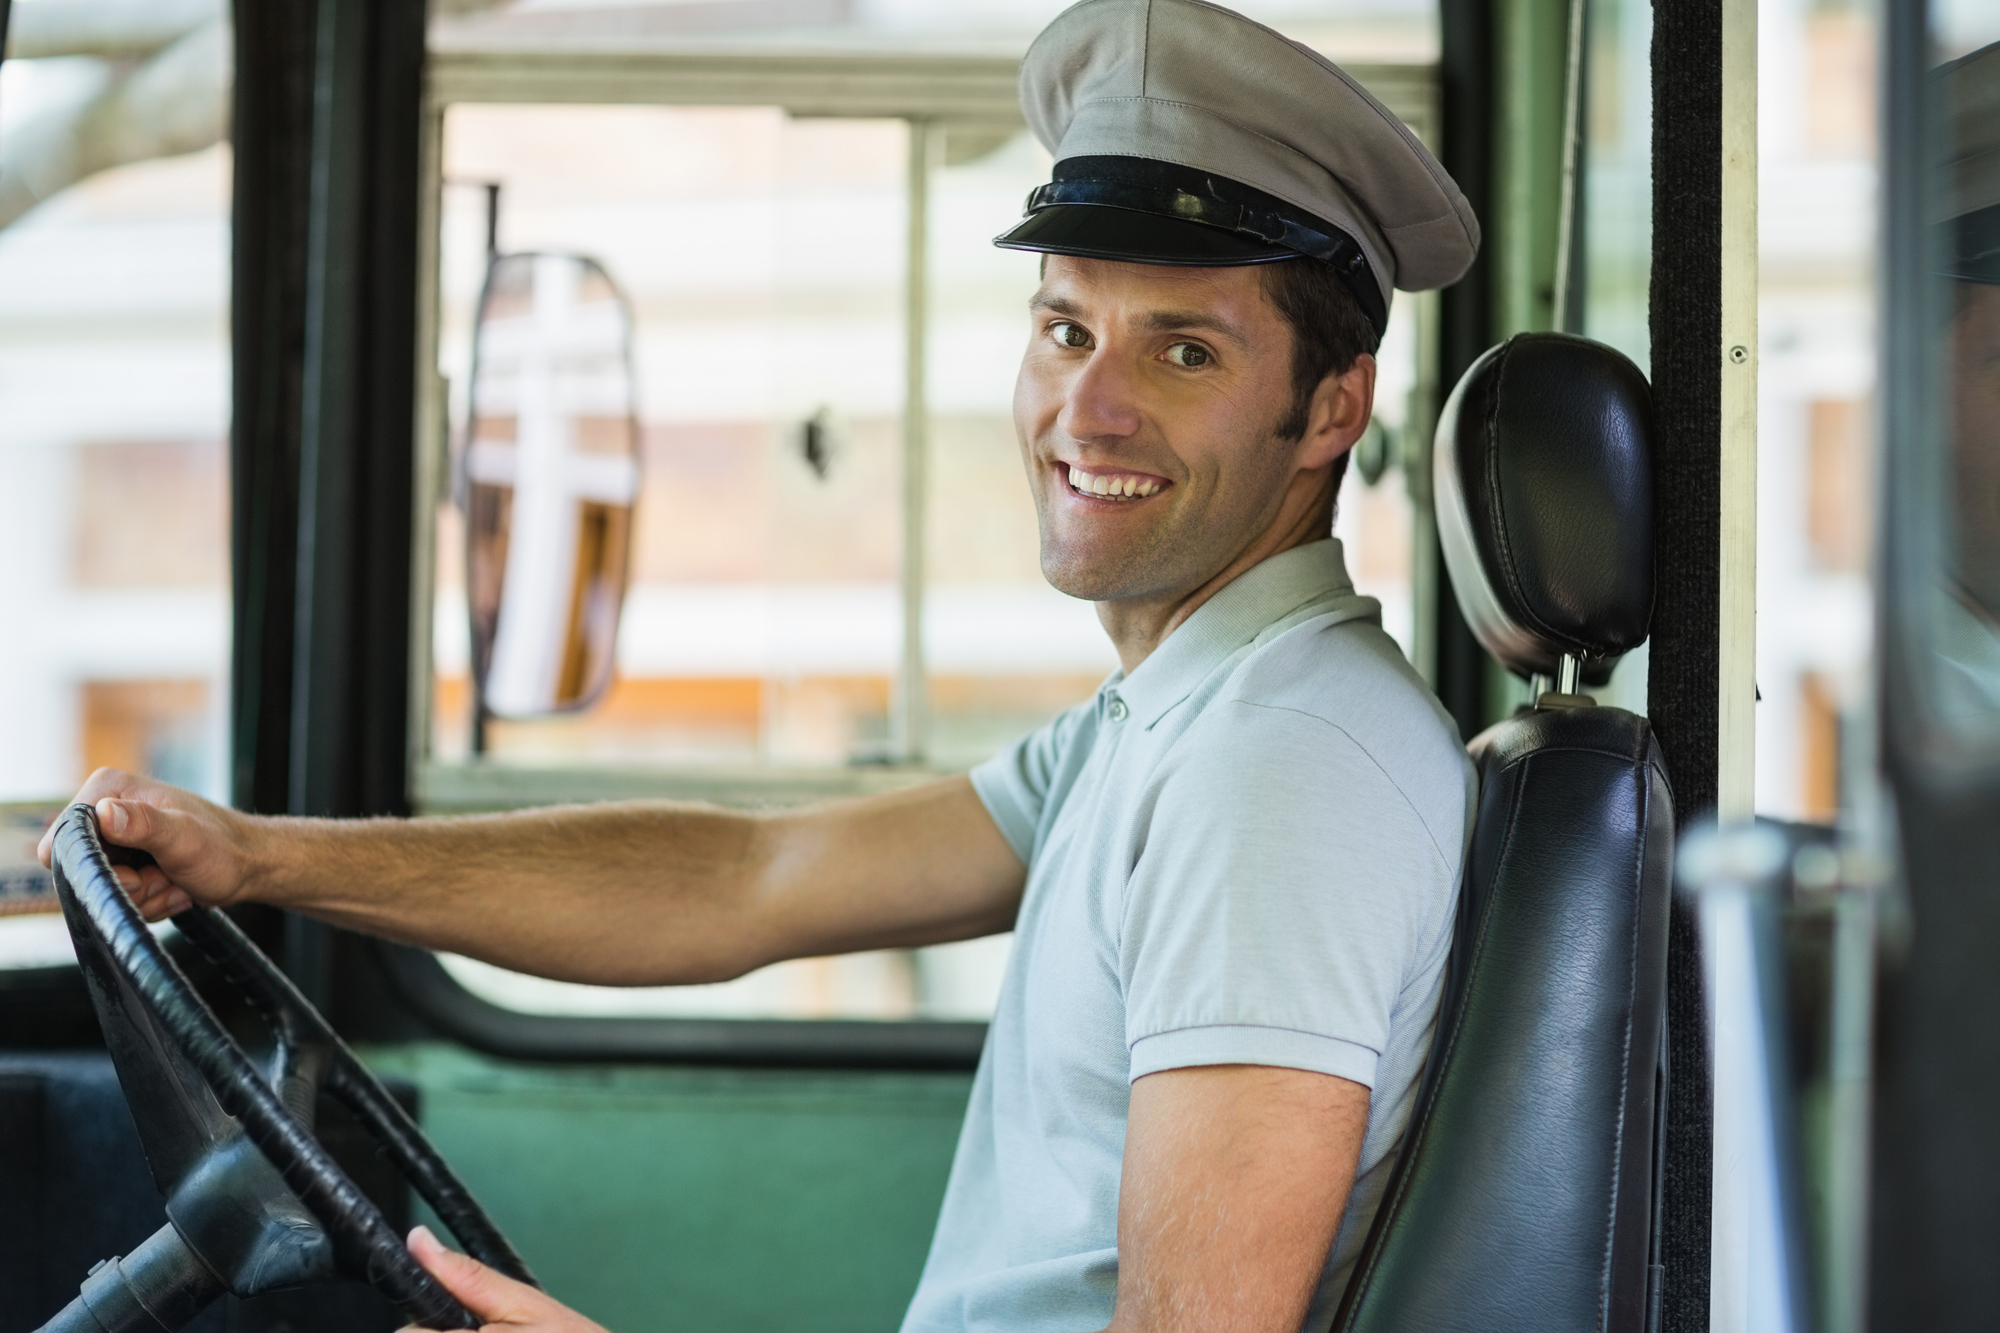 シェルリムラR6LMをご満足しているバス運転手のイメージ図です。